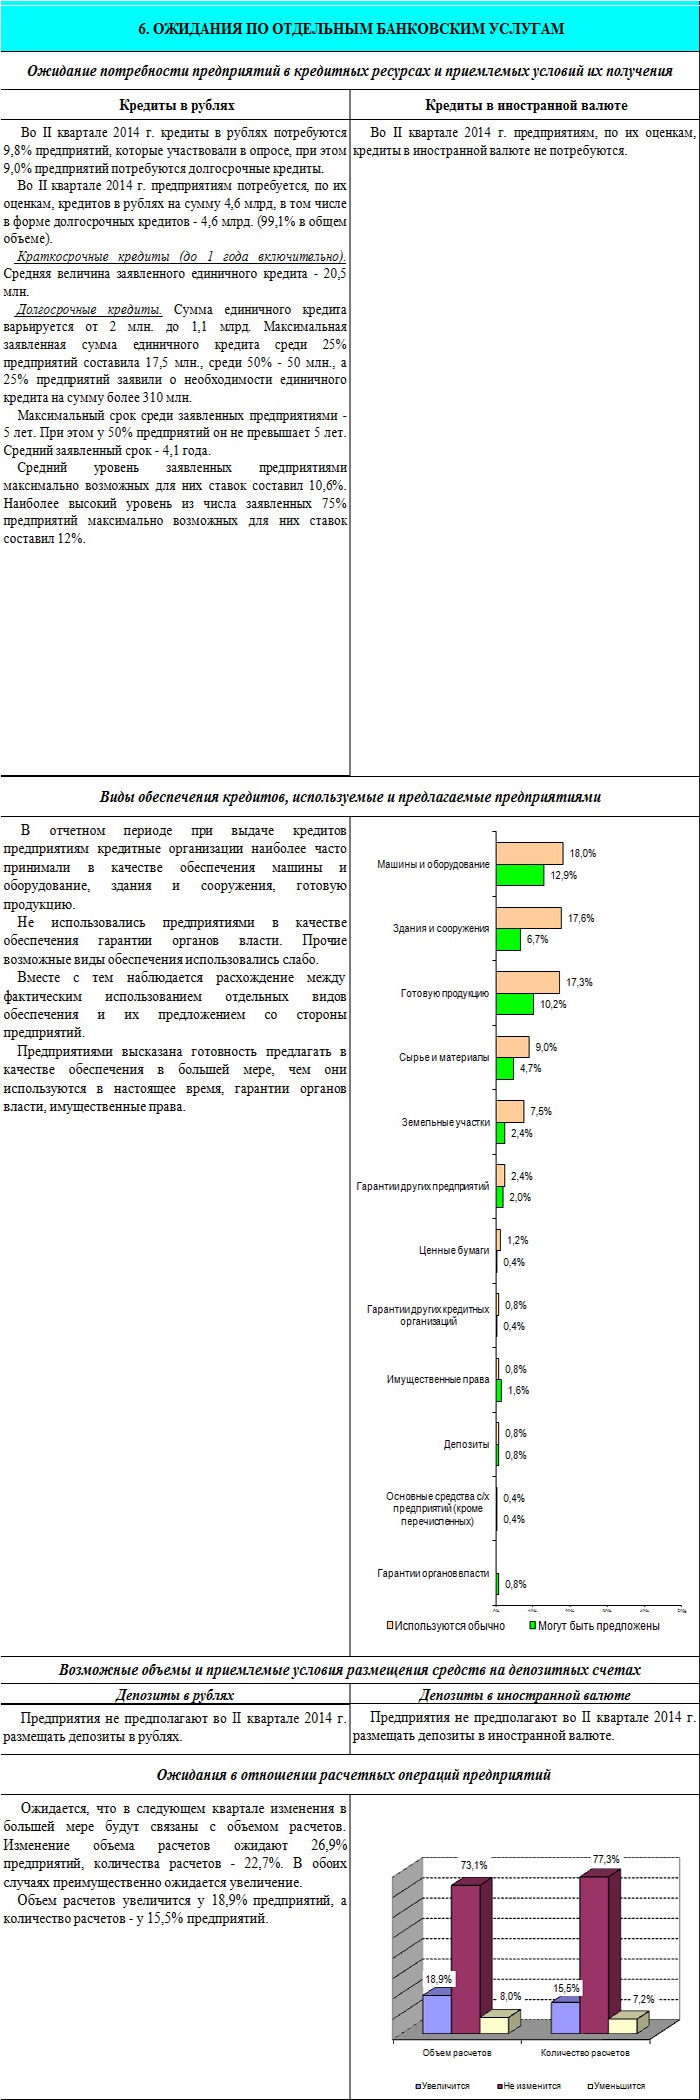 Главное управление Центробанка РФ по Алтайскому краю подвело итоги опроса предприятий нефинансового сектора экономики на банковские услуги в I квартале 2014 года. 